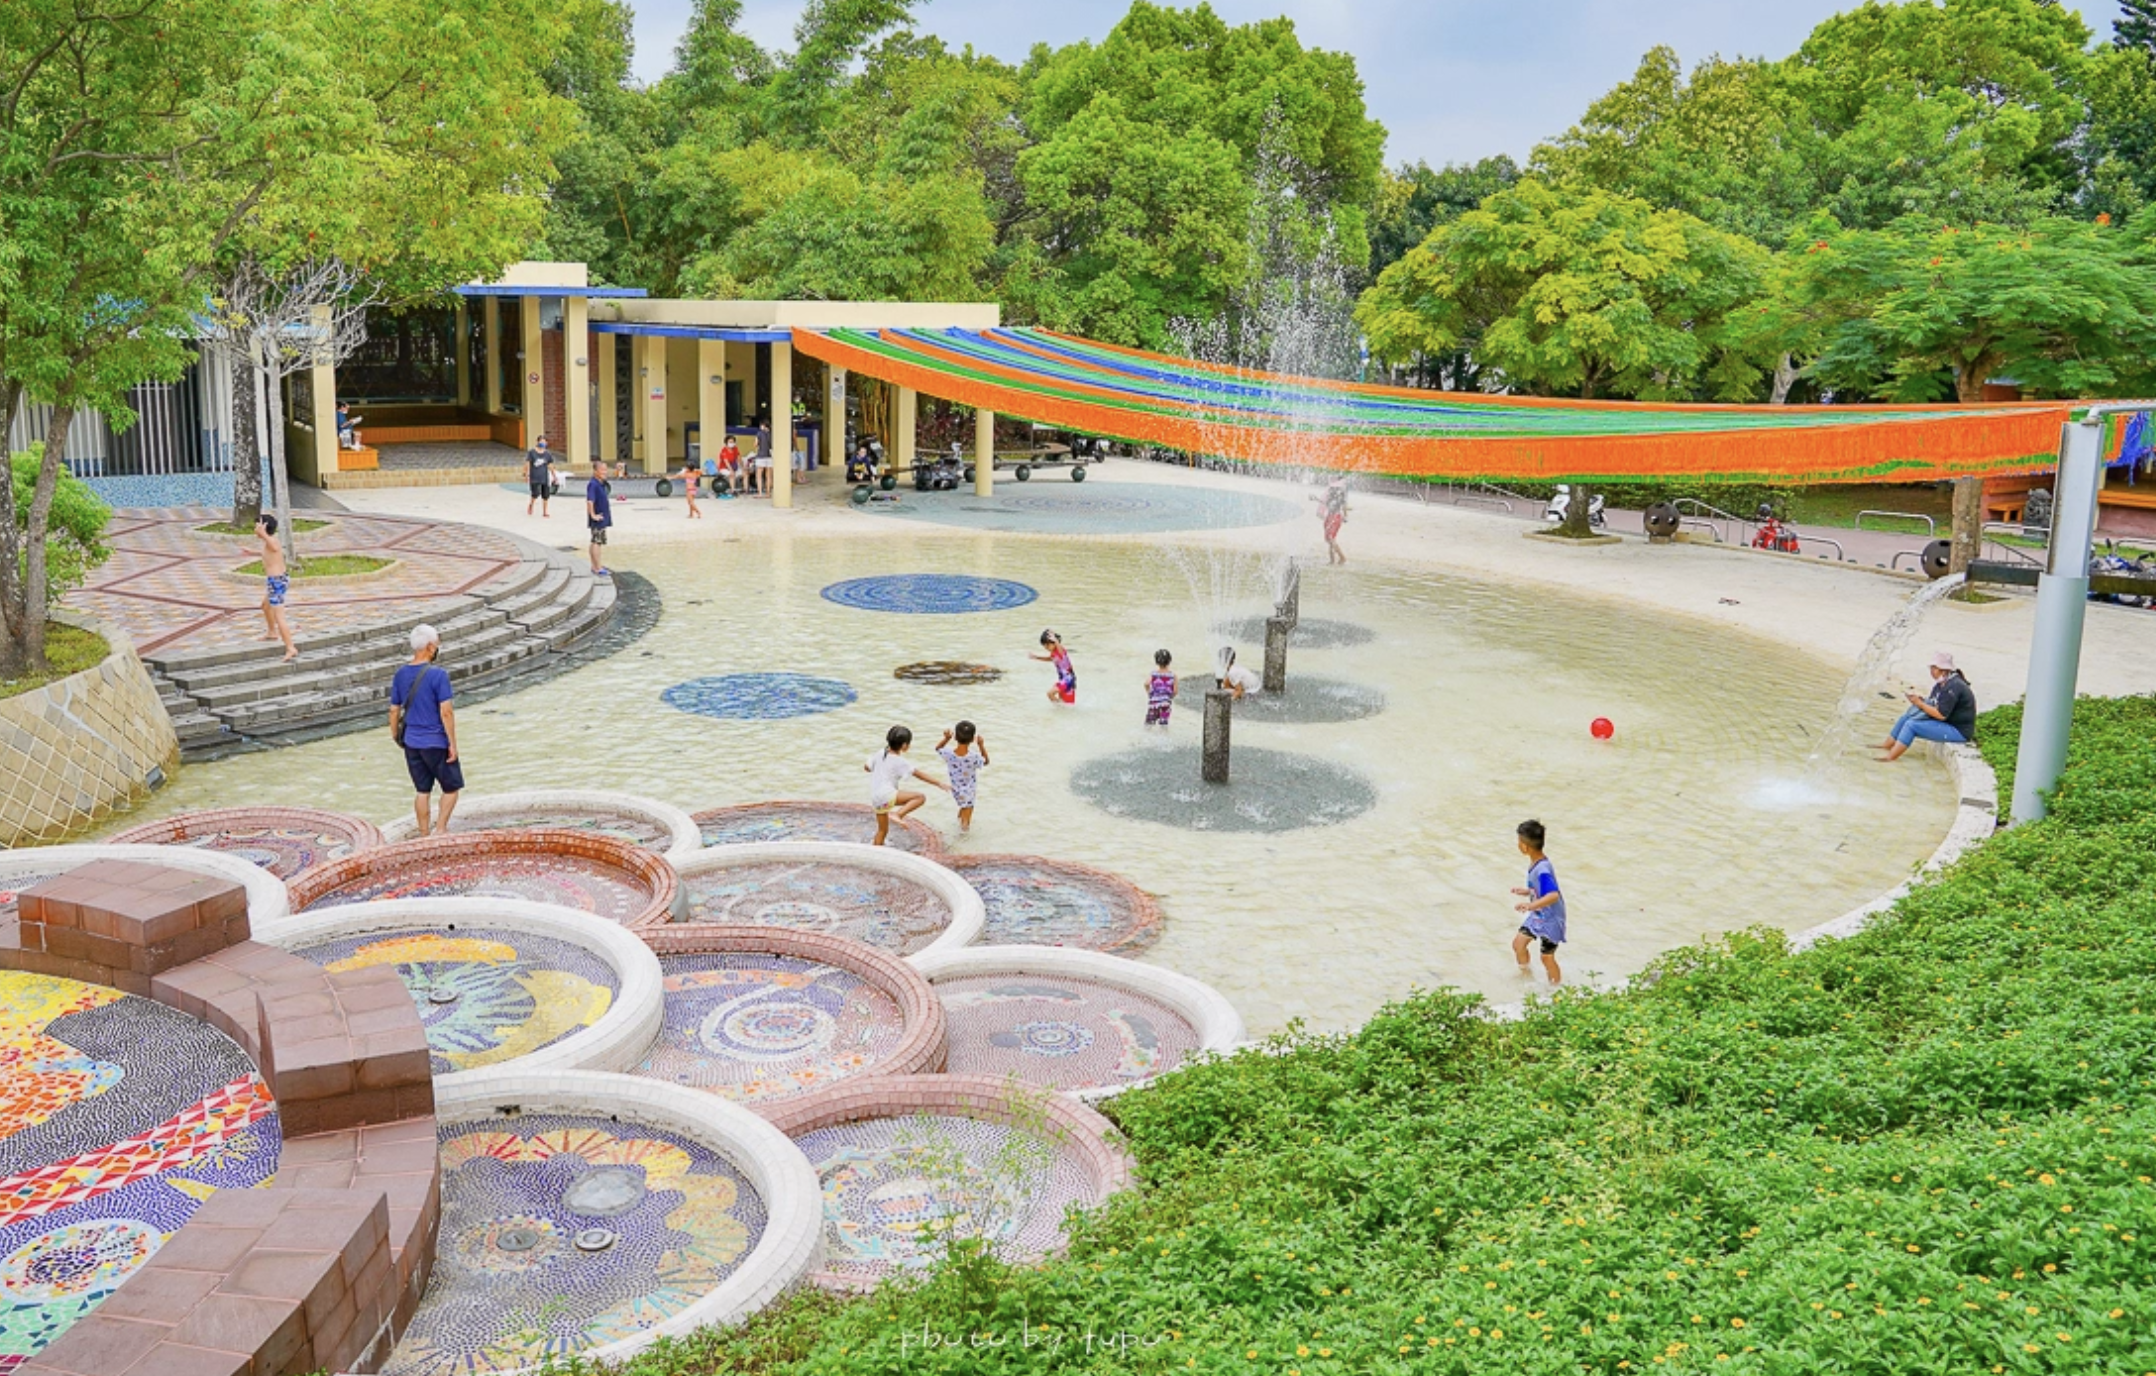 延伸閱讀：桃園景點》龍潭運動公園，免費夏日玩水景點，開放玩水活動時間、附近景點地圖